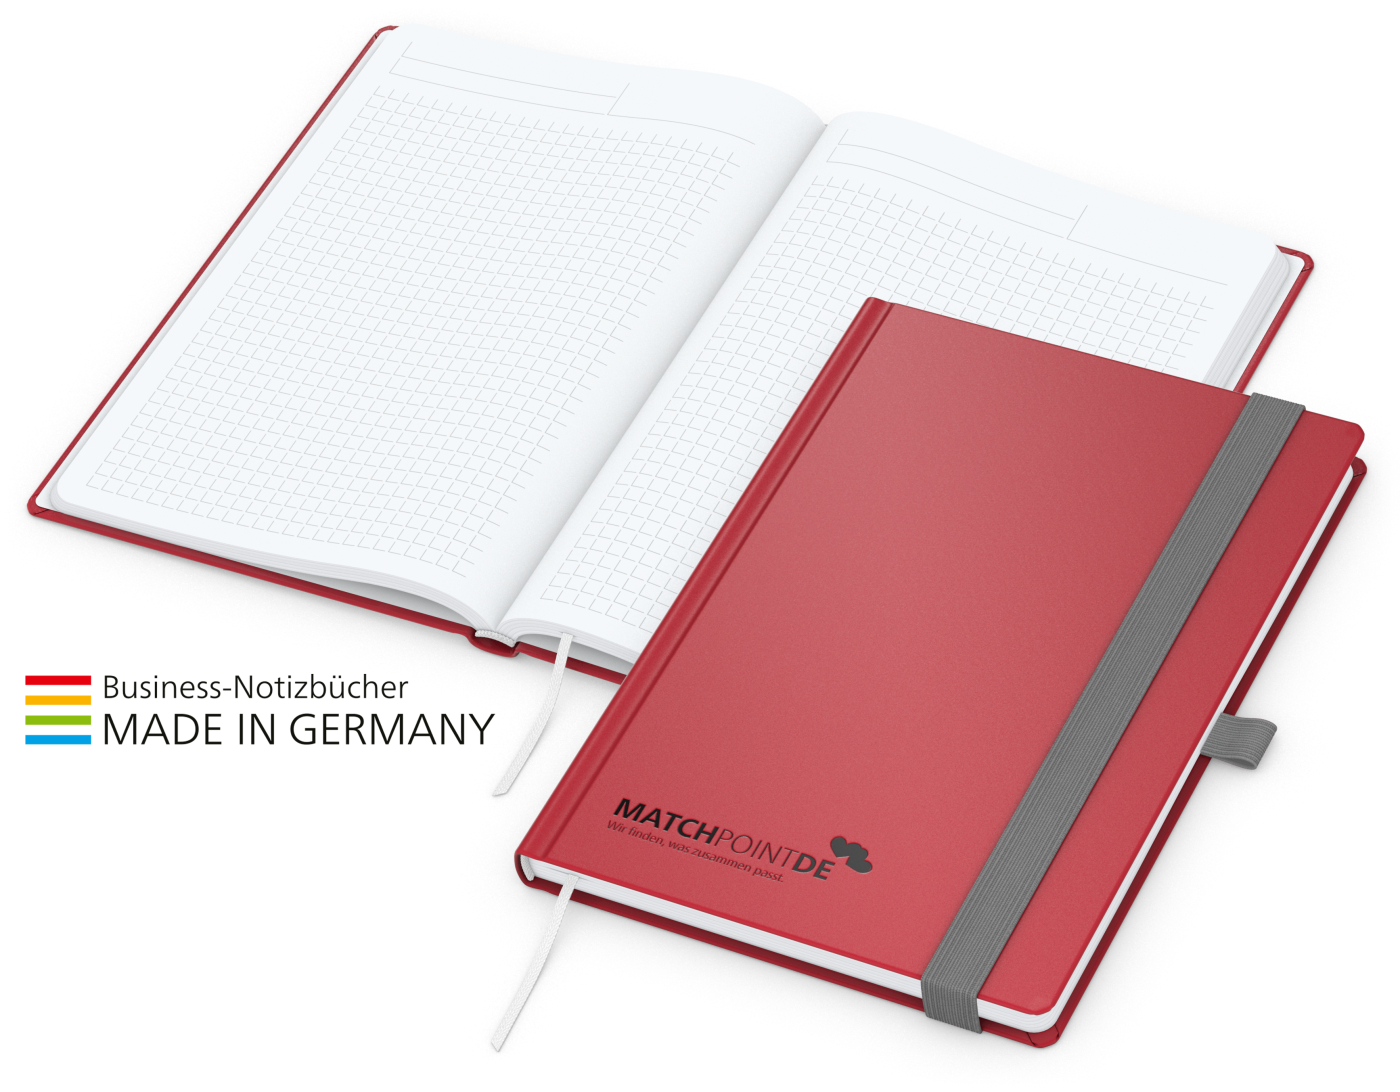 Notizbuch Vision-Book White Bestseller A5, rot inkl. Prägung schwarz-glänzend